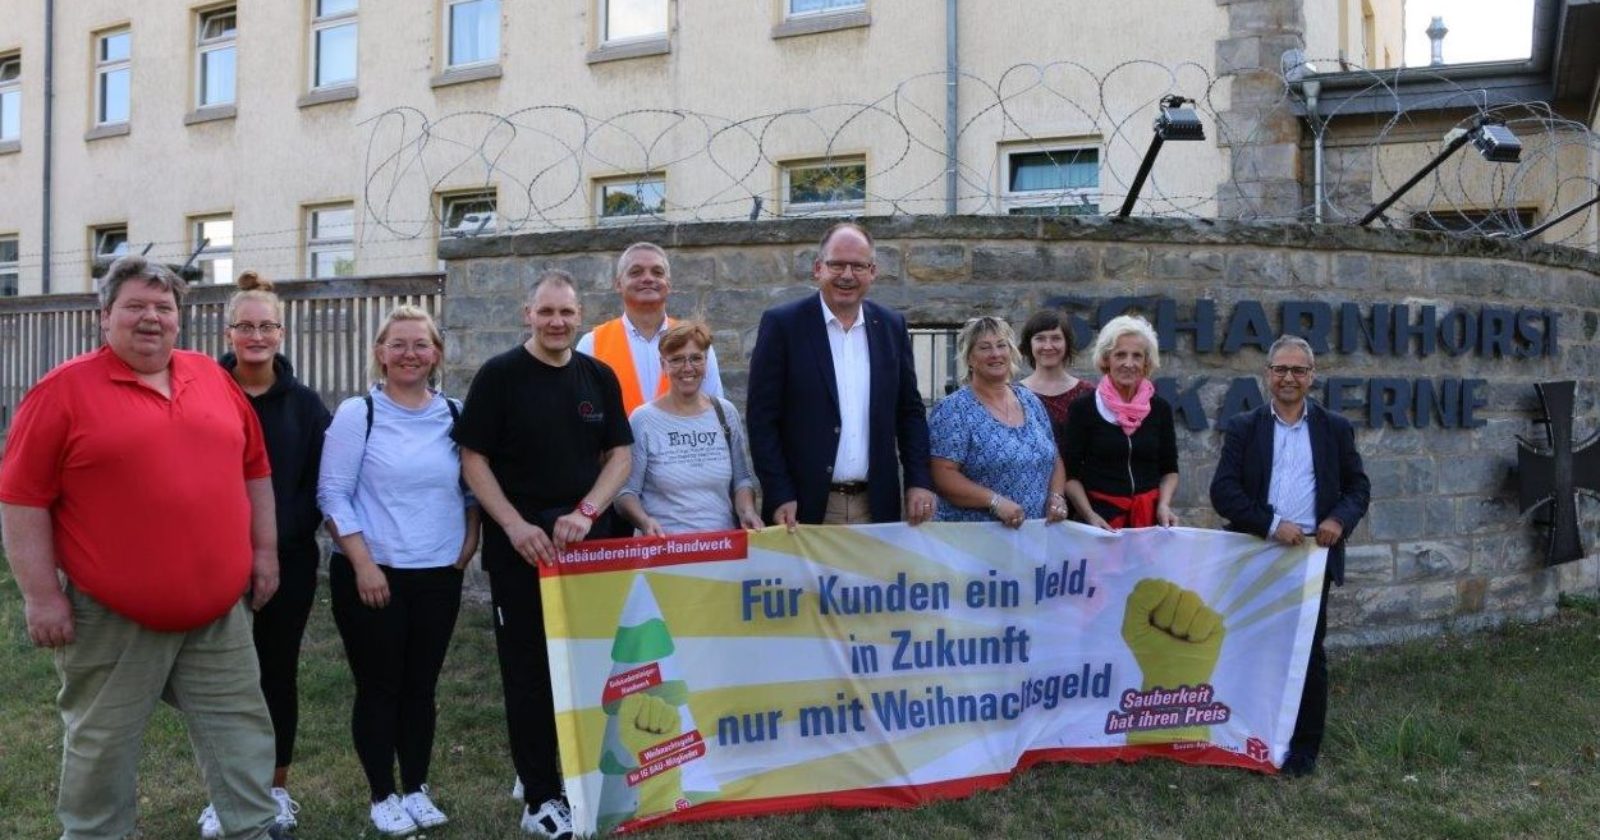 Stefan Körzell (DGB Bundesvorstand) besucht GebäudereinigerInnen von F.J. Petrehoff in Hannover